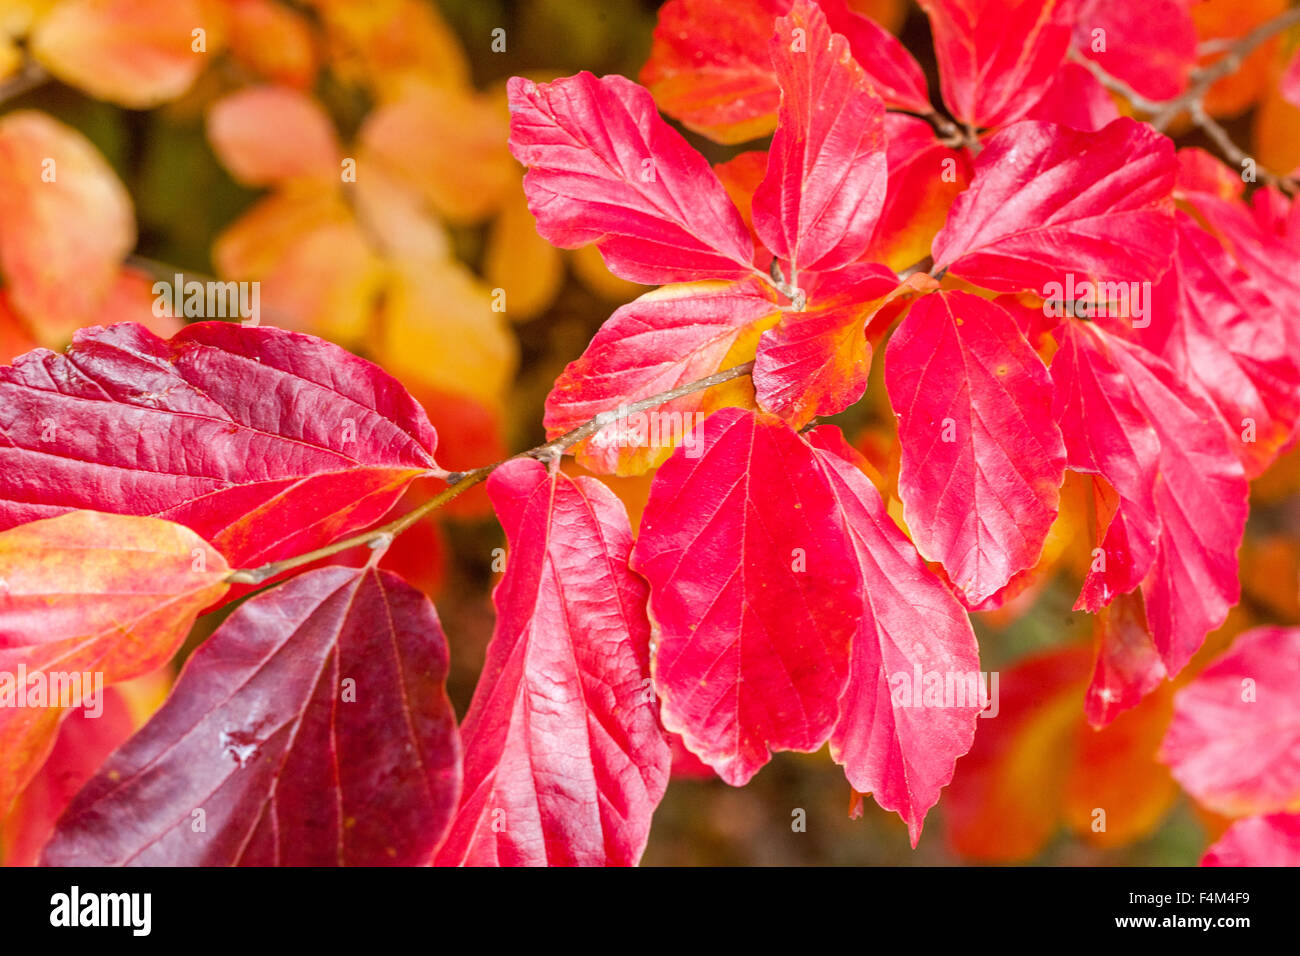 Persisches Eisenholz, Parrotia persica, rote Blätter Gartenlaube Herbst Oktober Pflanze Eisbaum Stockfoto